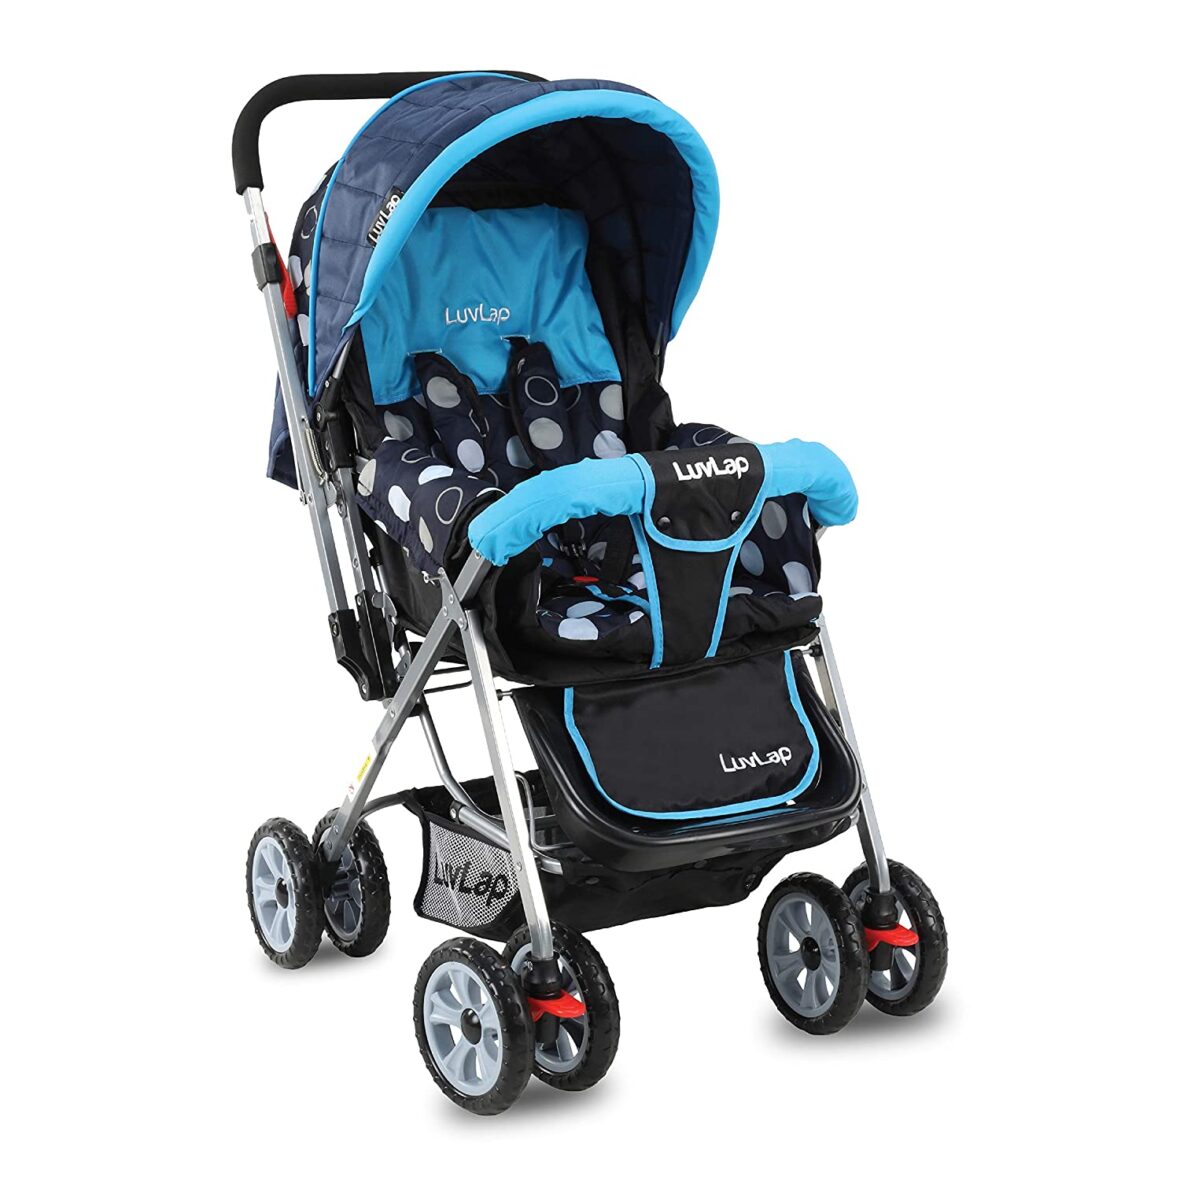 Luvlap Sunshine Stroller/Pram, Easy Fold, for Newborn Baby/Kids, 0-3 Years (Sky Blue) 18155